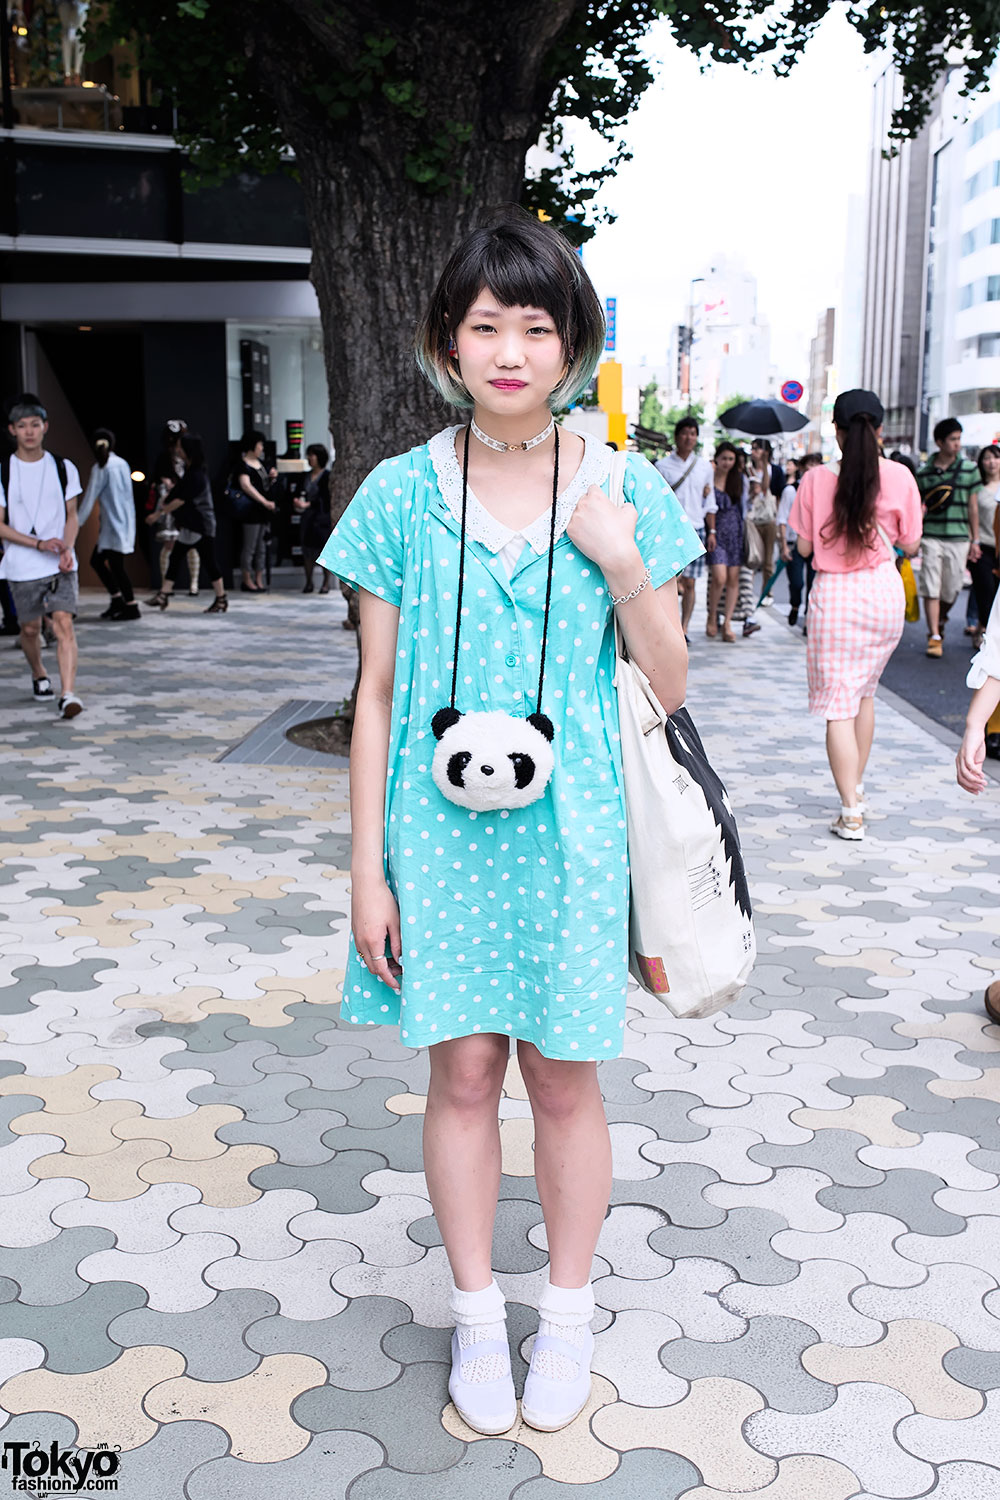 Green-tipped Bob Hairstyle, Panda Purse & Polka Dots in Harajuku